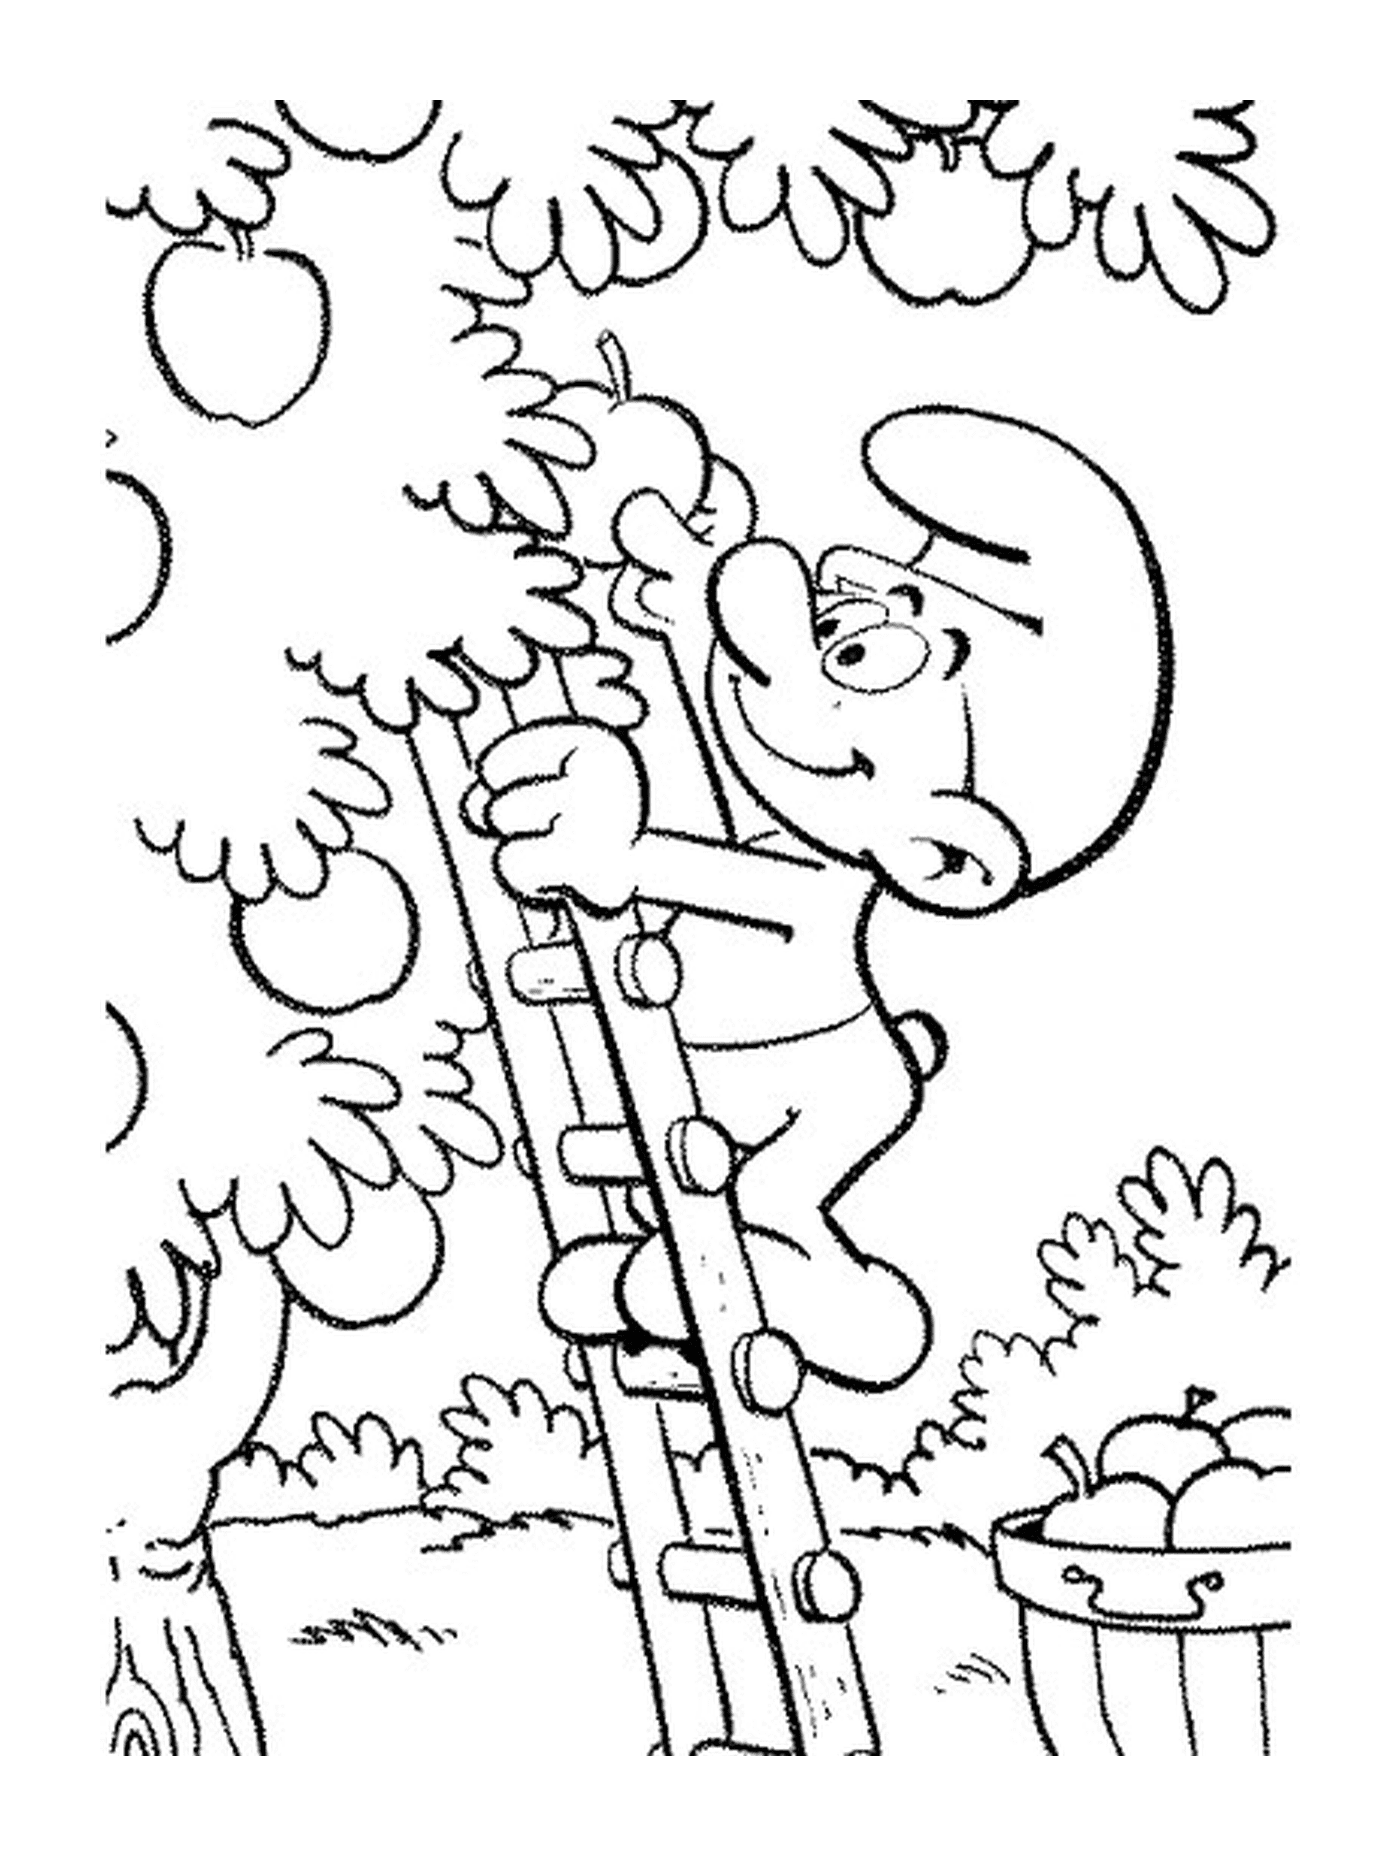  A Smurf climbing on a ladder 